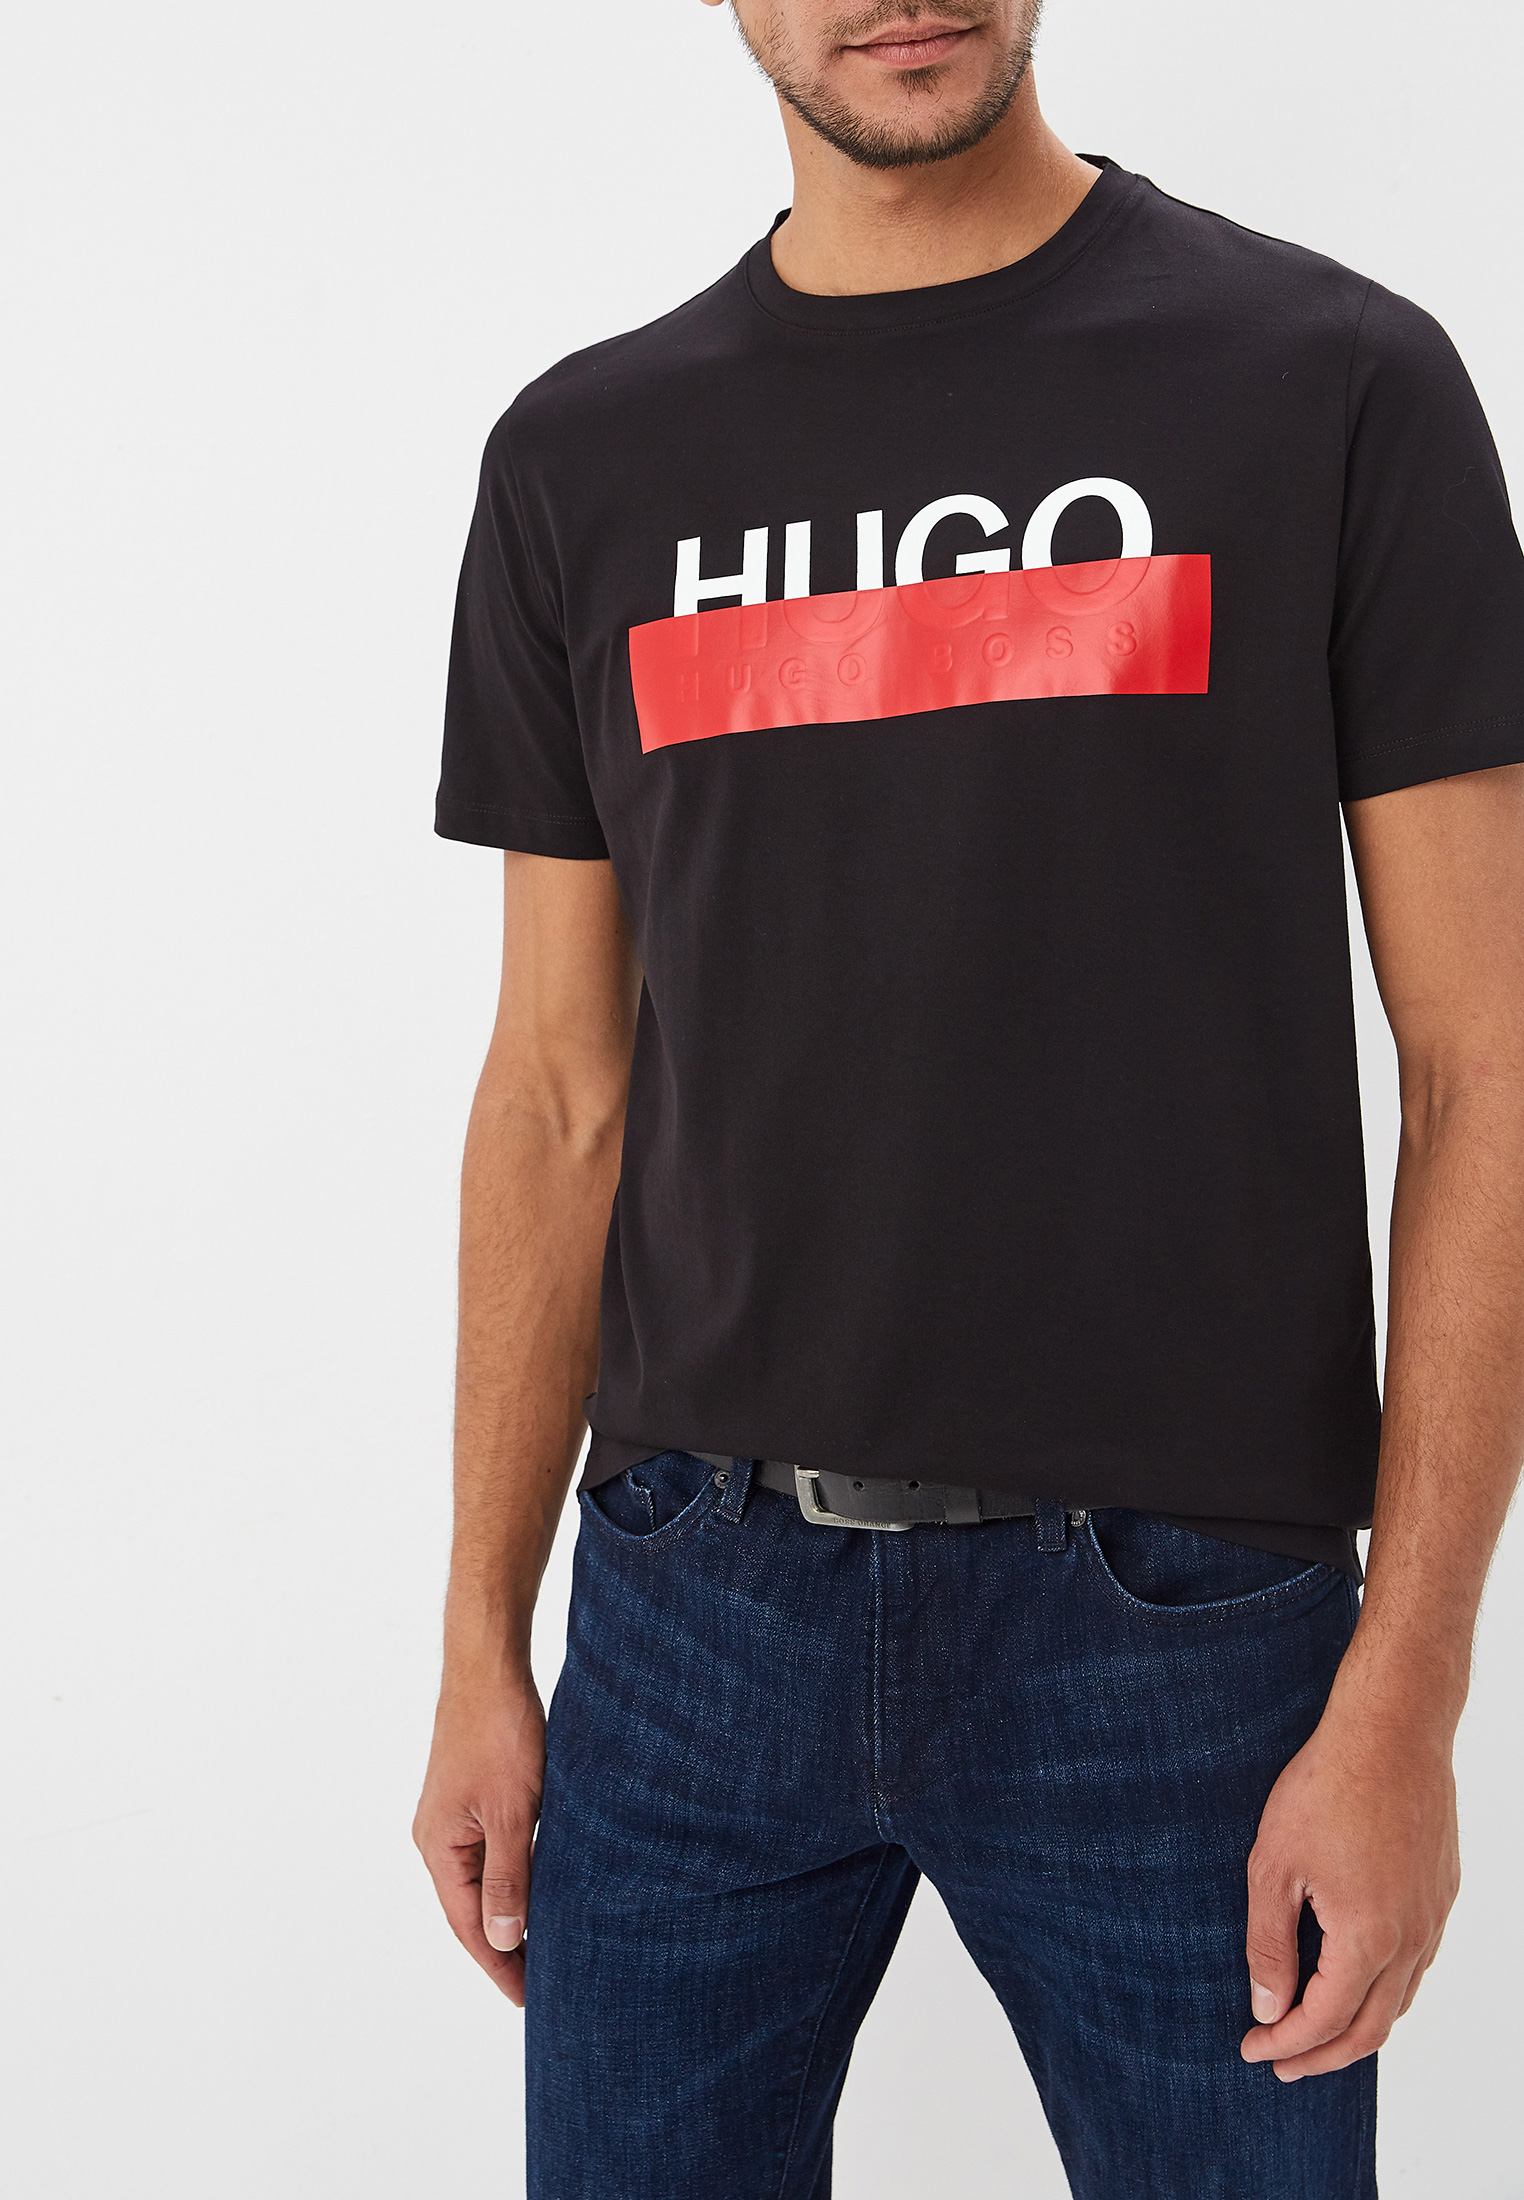 Купить футболку hugo. Футболка Hugo Hugo Boss черная. Майка Хуго босс черная. Футболка Boss Hugo Boss. Футболка Hugo Boss 2022.